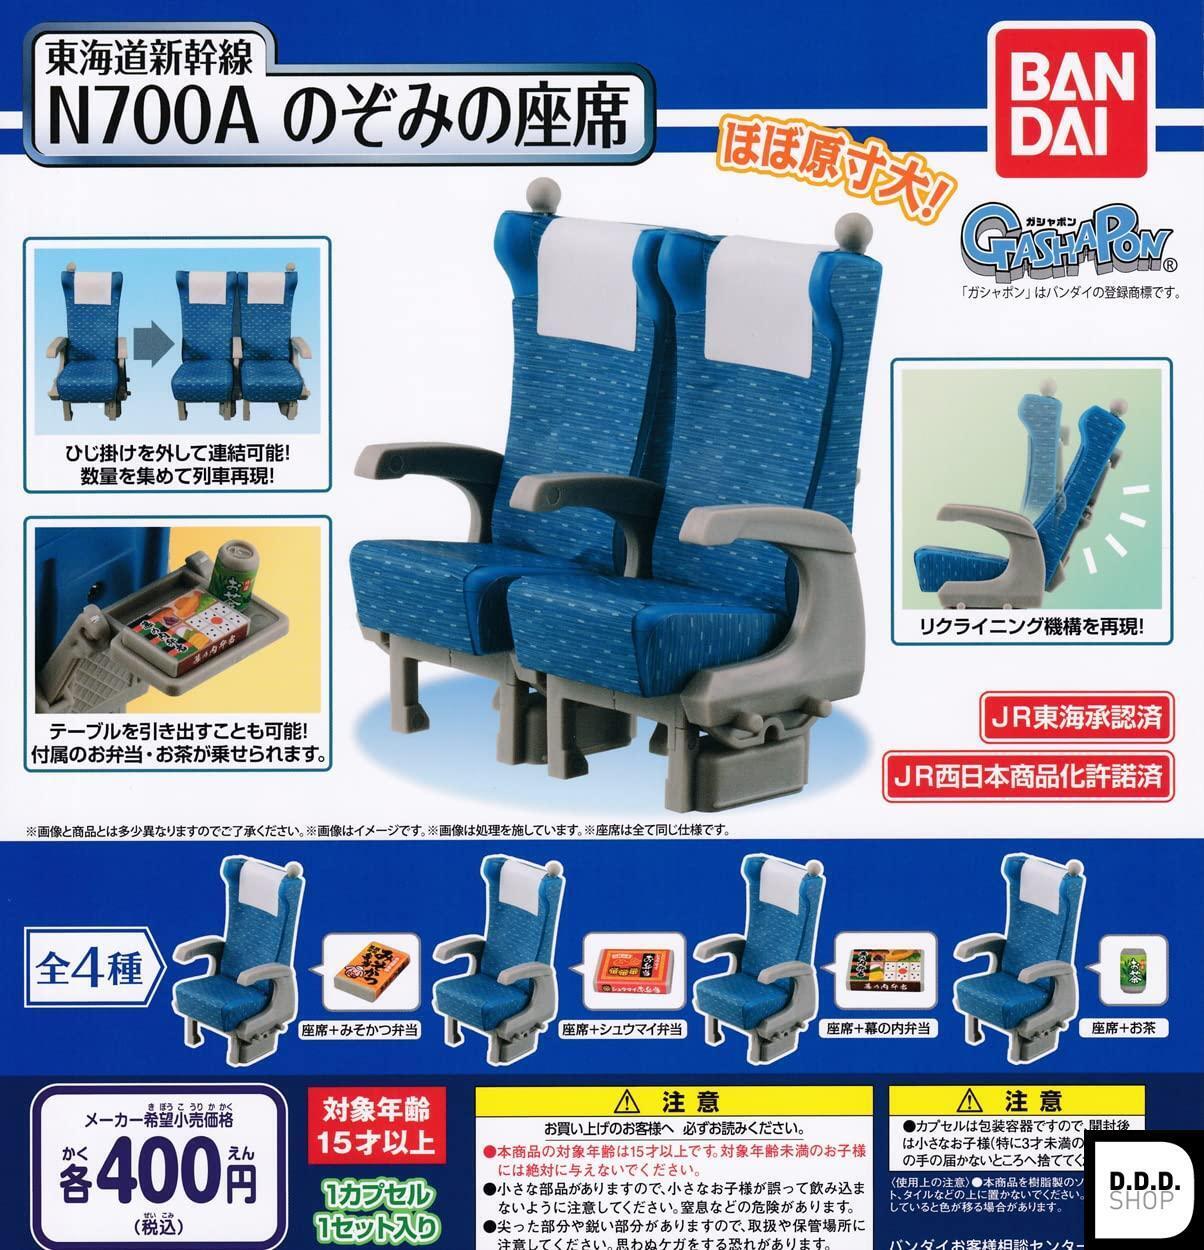 Tokaido Shinkansen N700A Nozomi\'s Seat All 4 variety set Gashapon toys